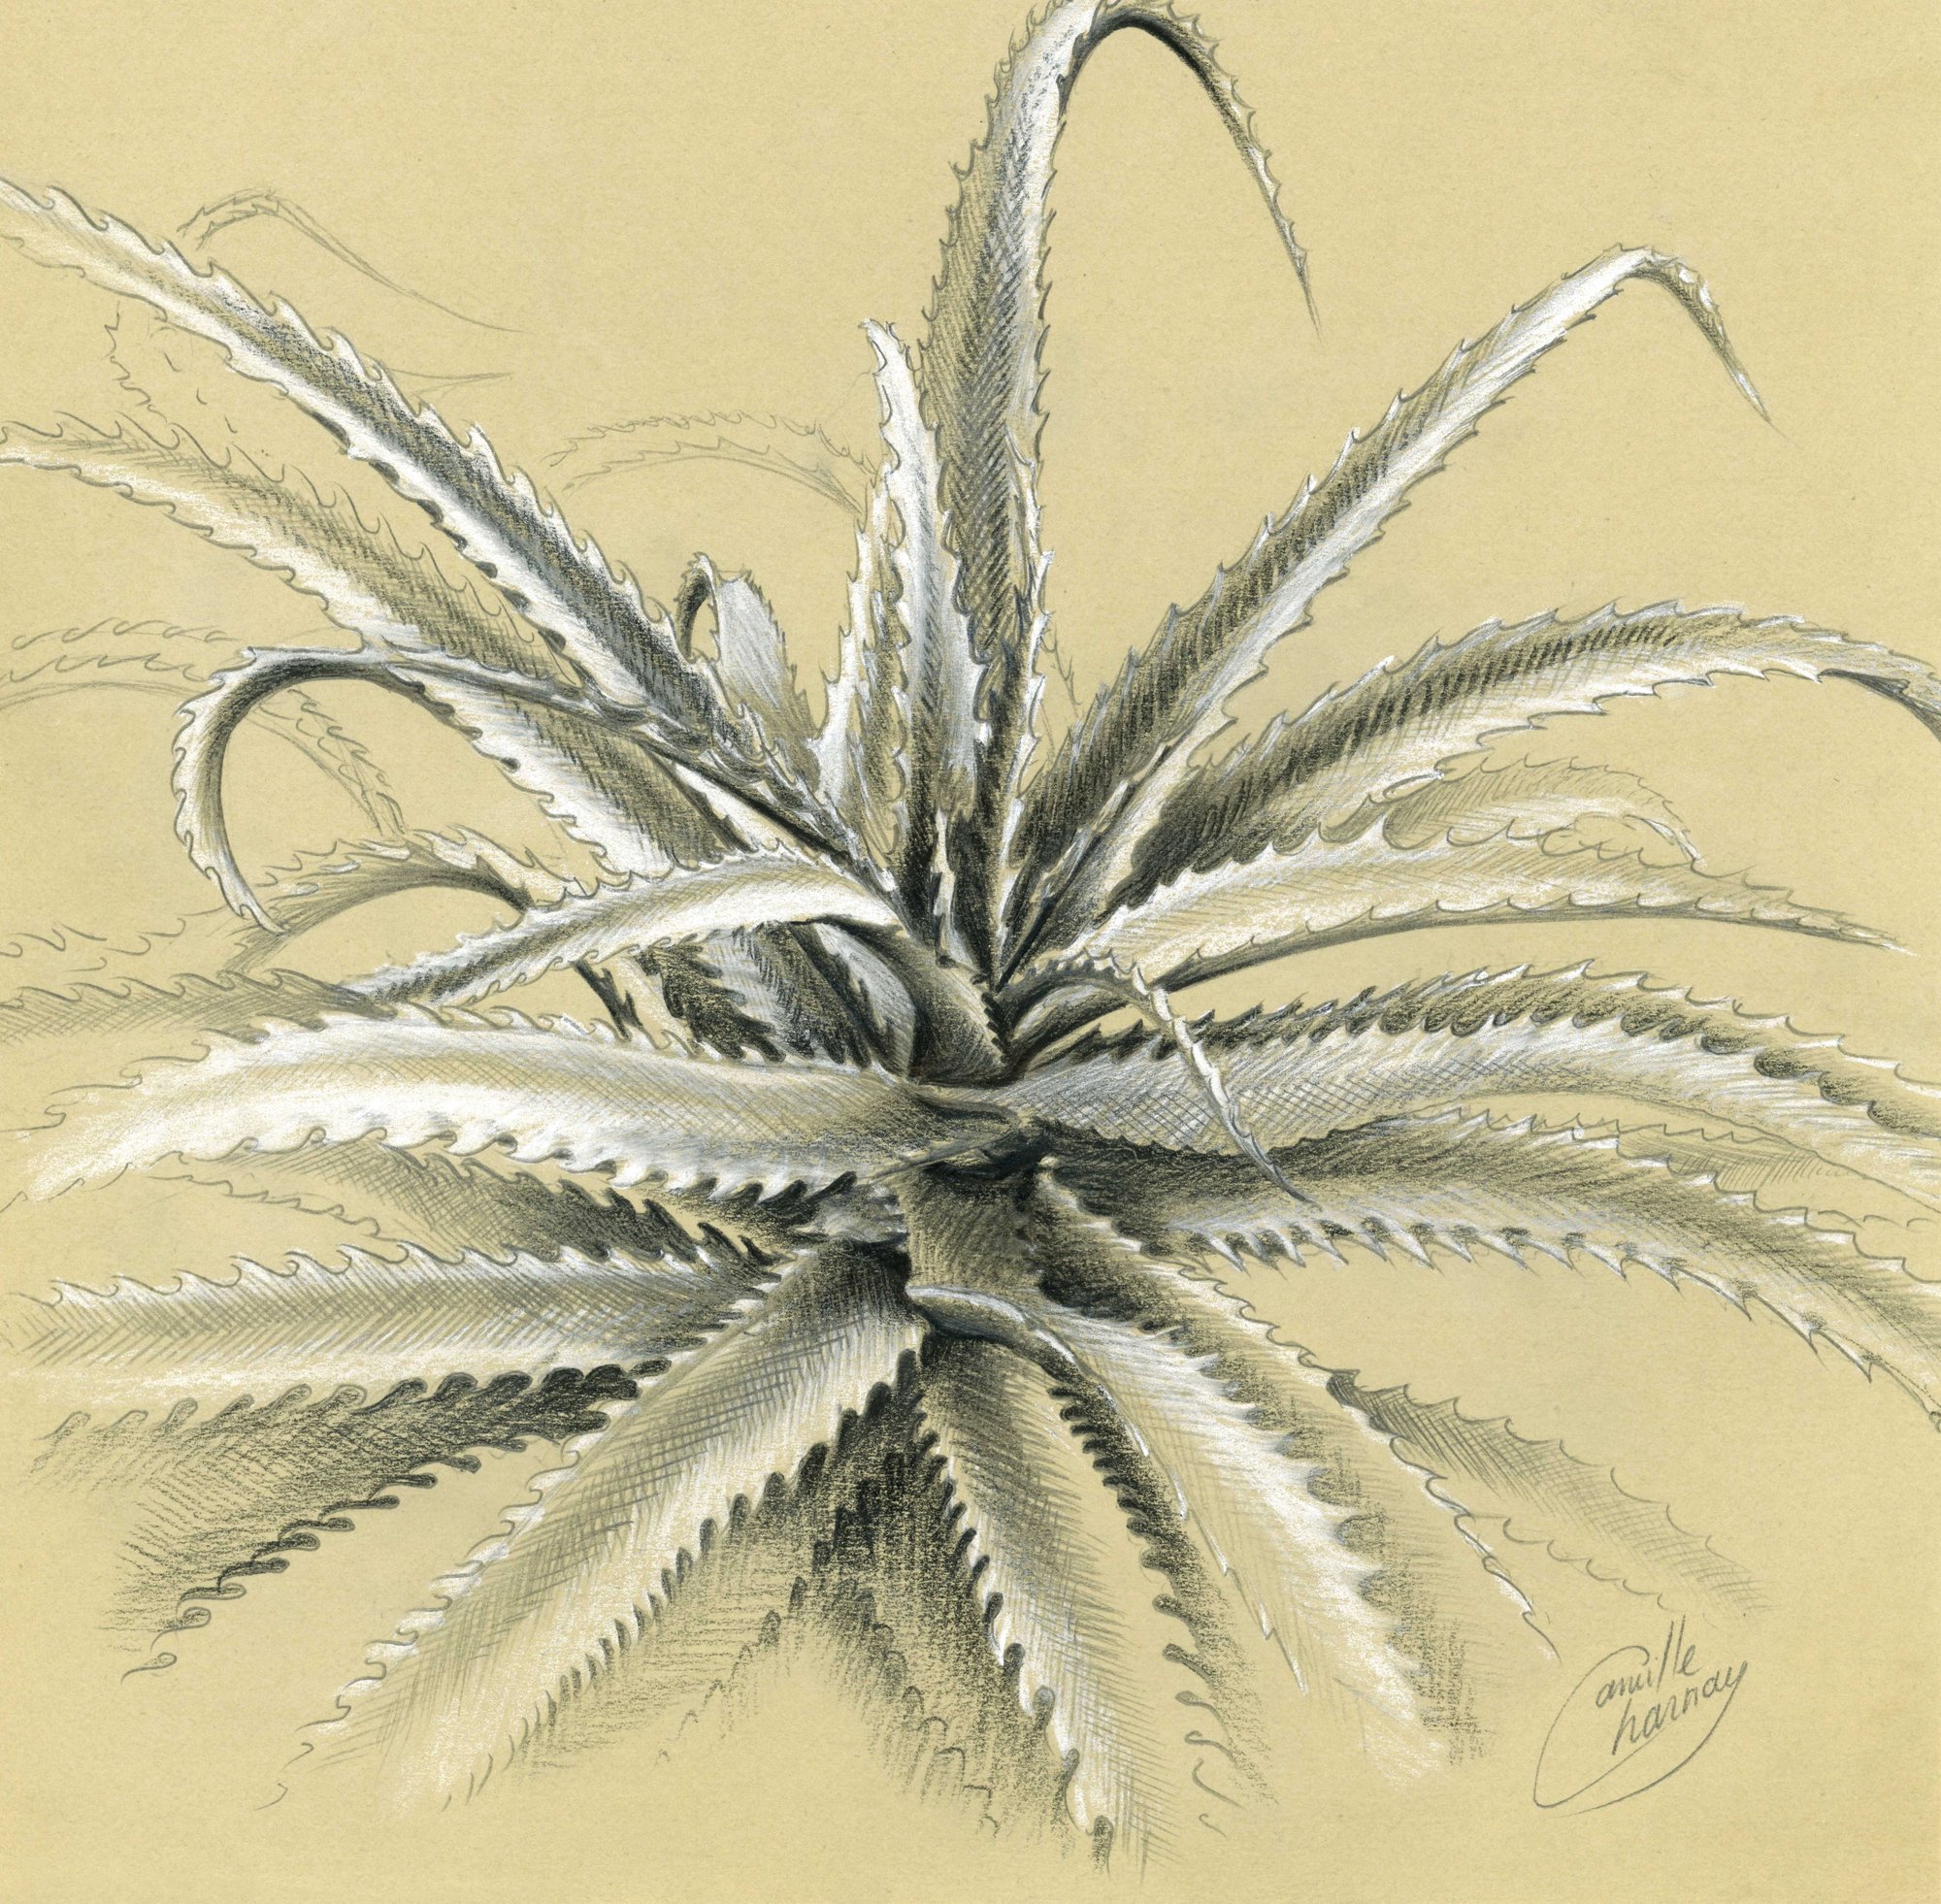 Image of Aloe arborescens